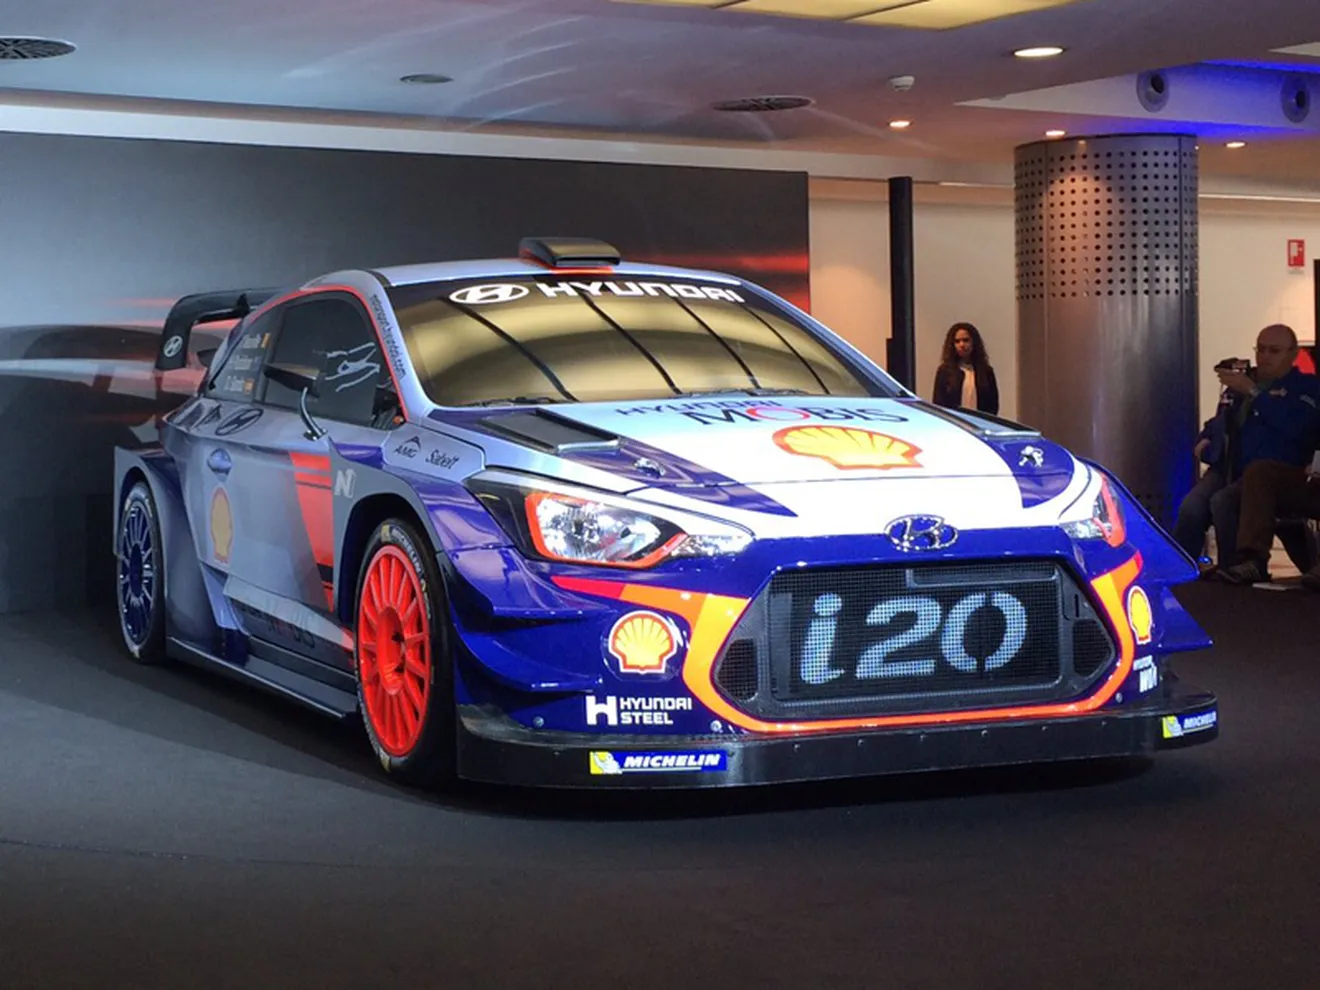 Desvelado el nuevo Hyundai i20 WRC 2017 en Monza